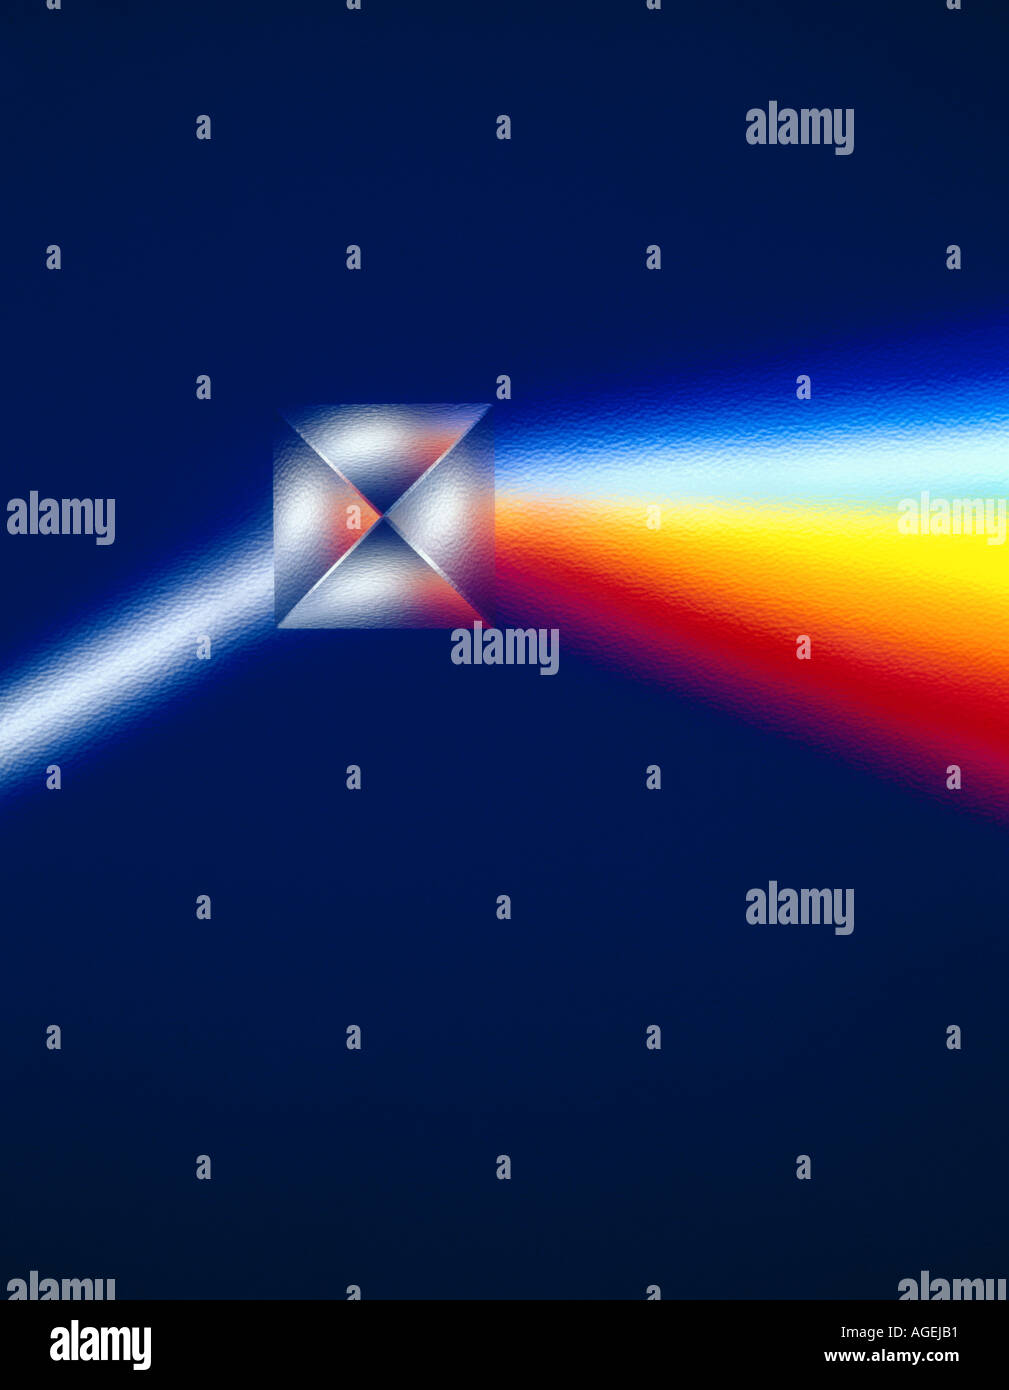 Prisma astratto con raggi di luce rifratti che entrano nello spettro dei colori. Immagine studio. Foto Stock